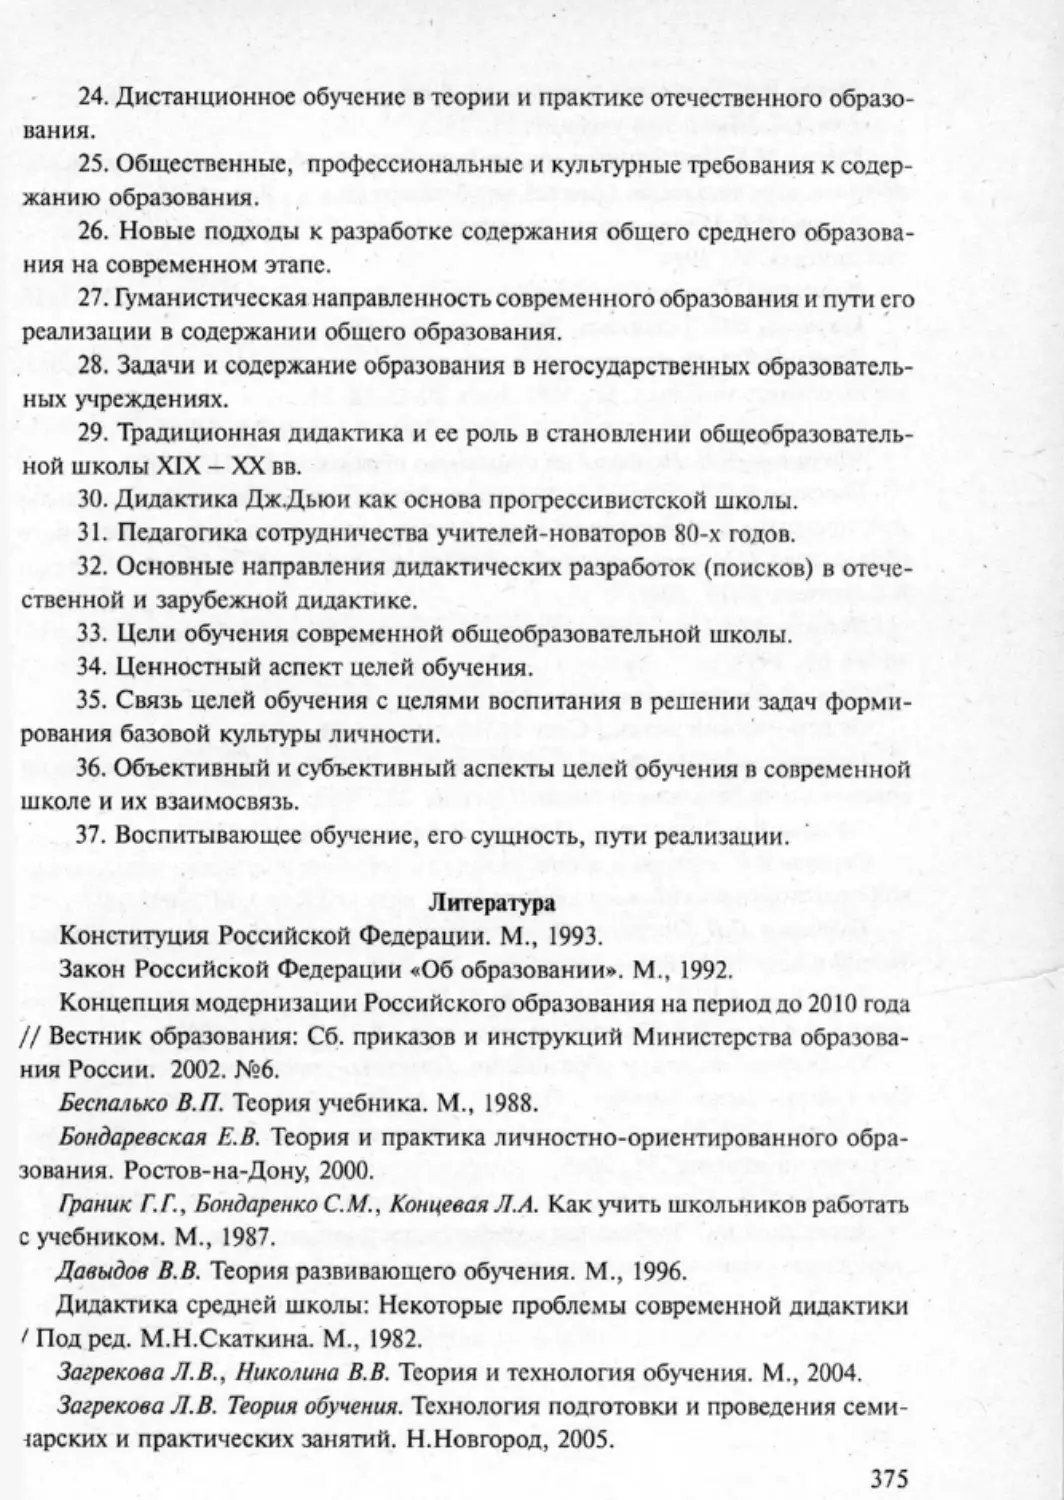 Загрекова Л.В., Николаева В.В - 0376